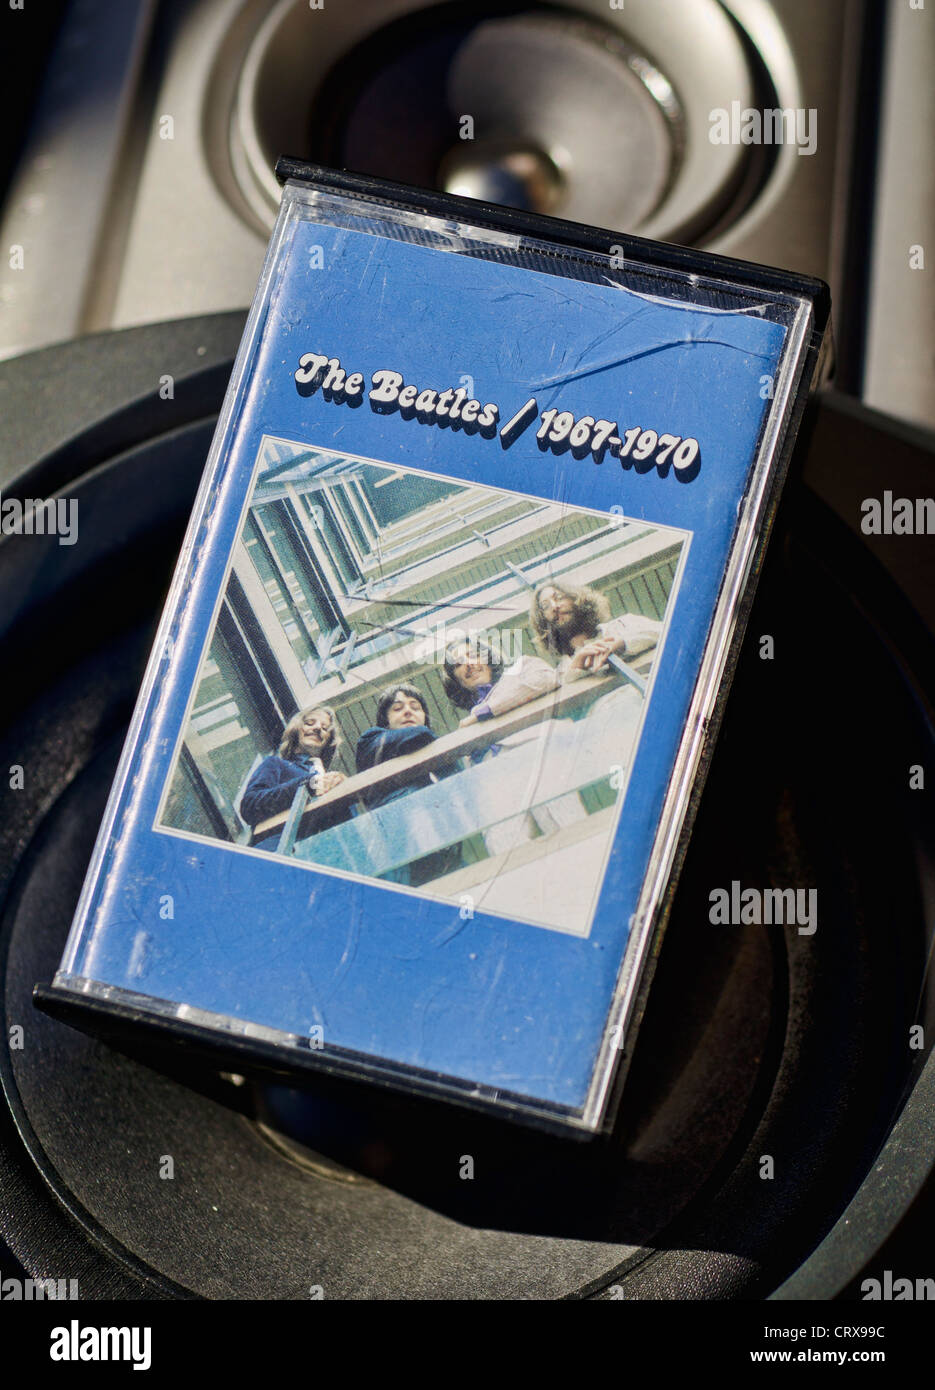 L'Album bleu des Beatles 1967-1970 sur cassette audio. Banque D'Images